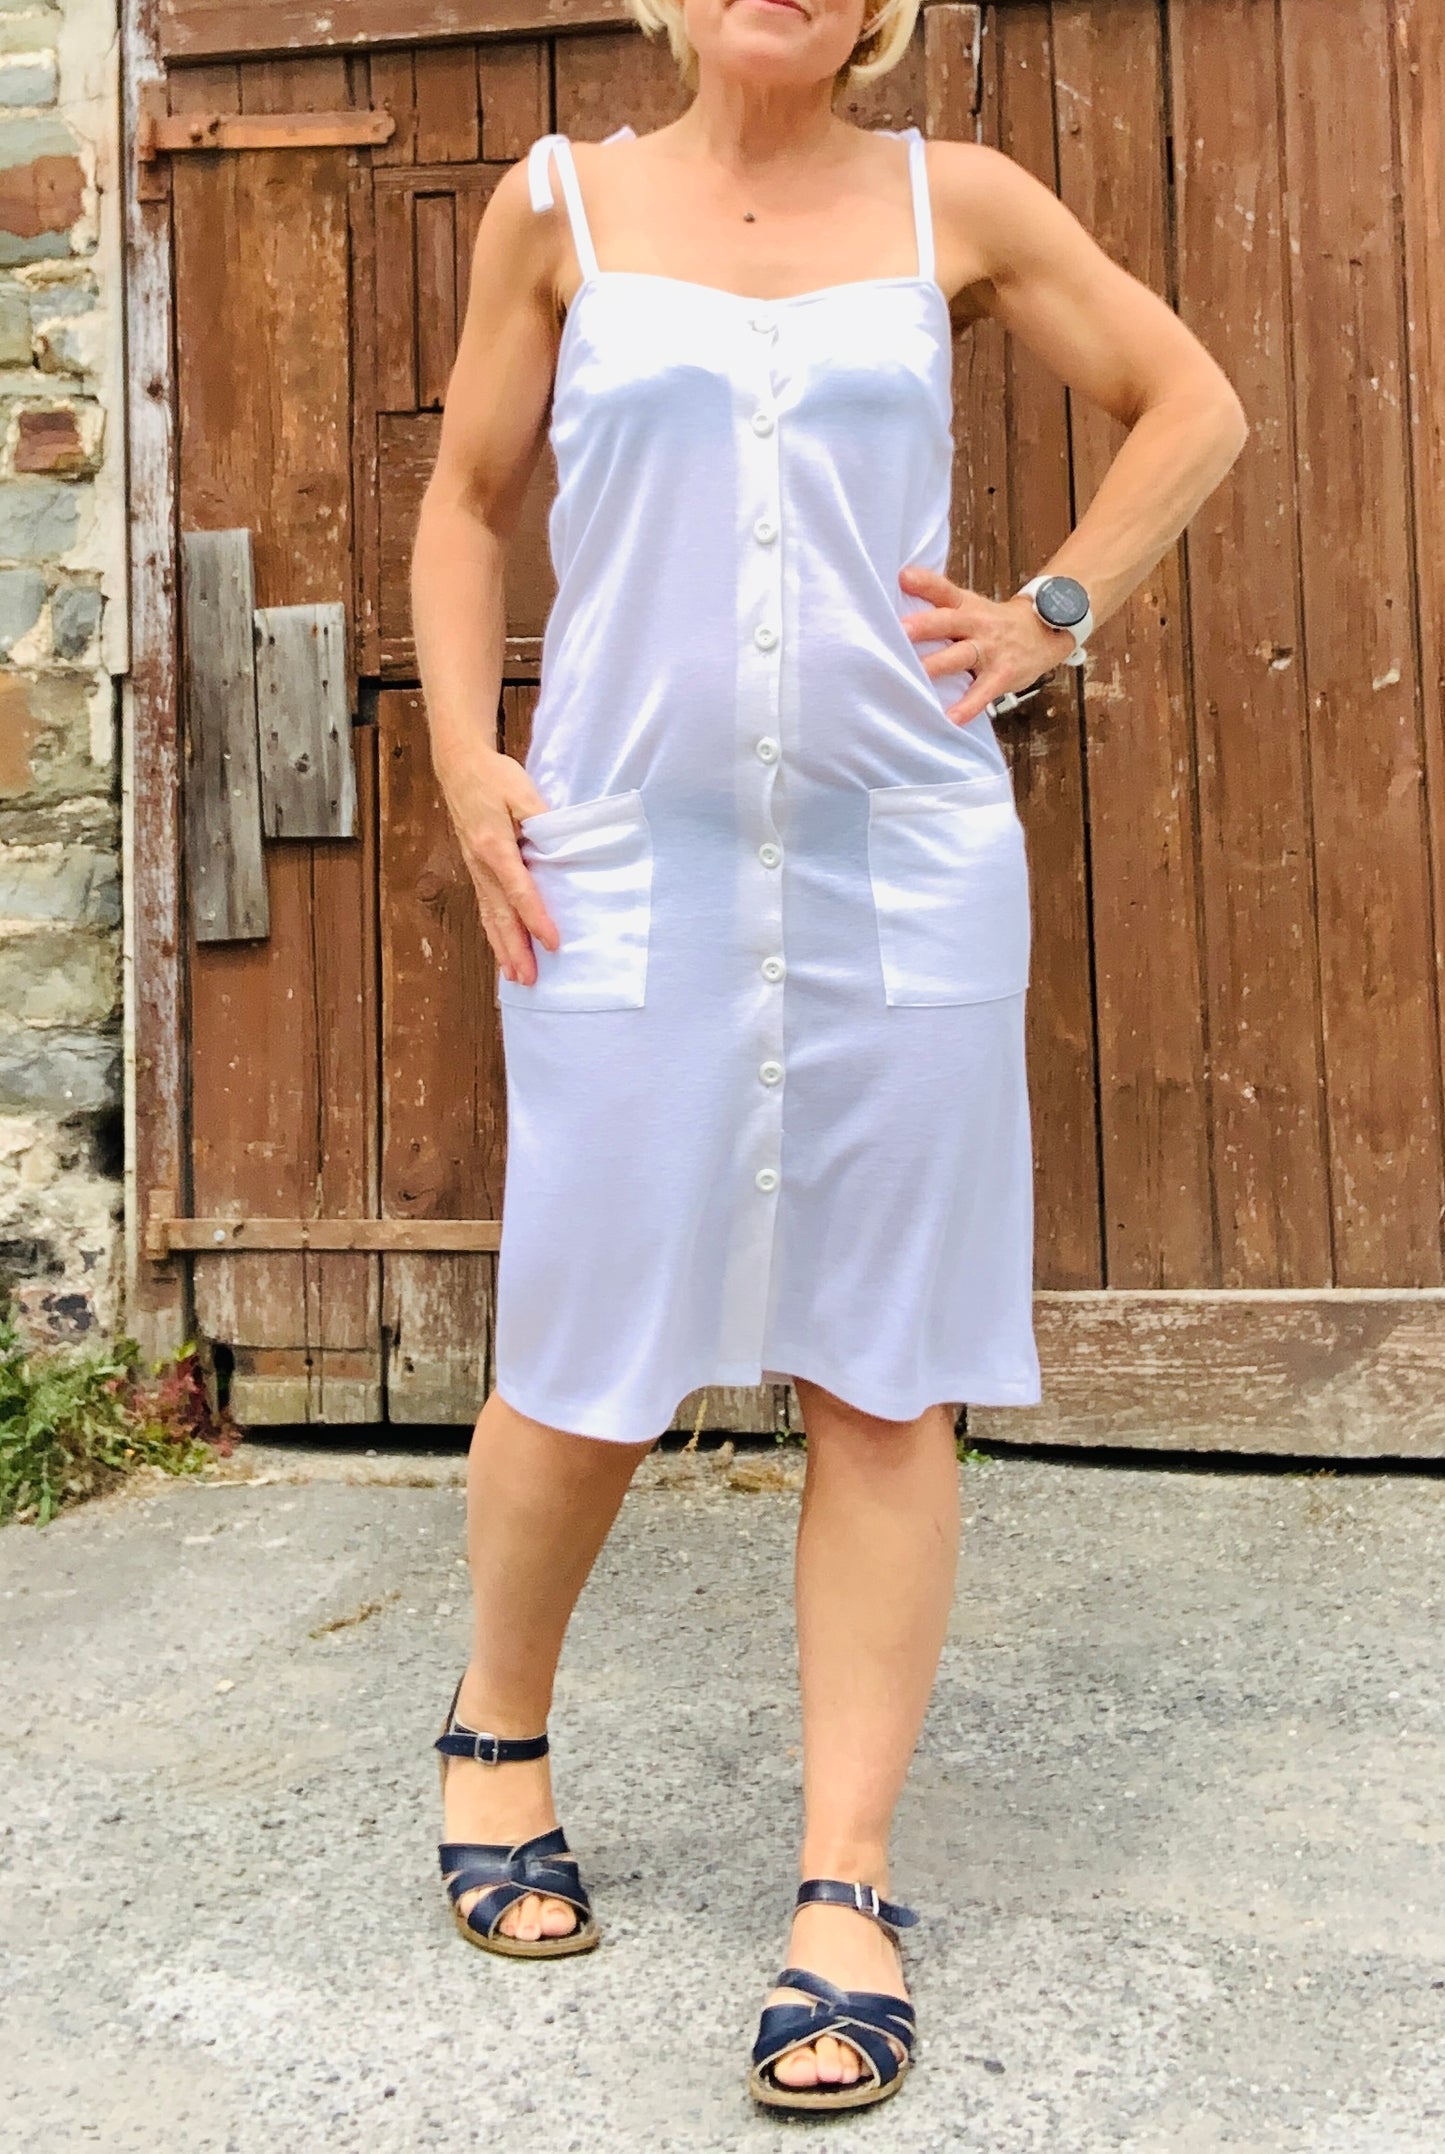 Original 70’s Chelsea girl white jersey summer dress